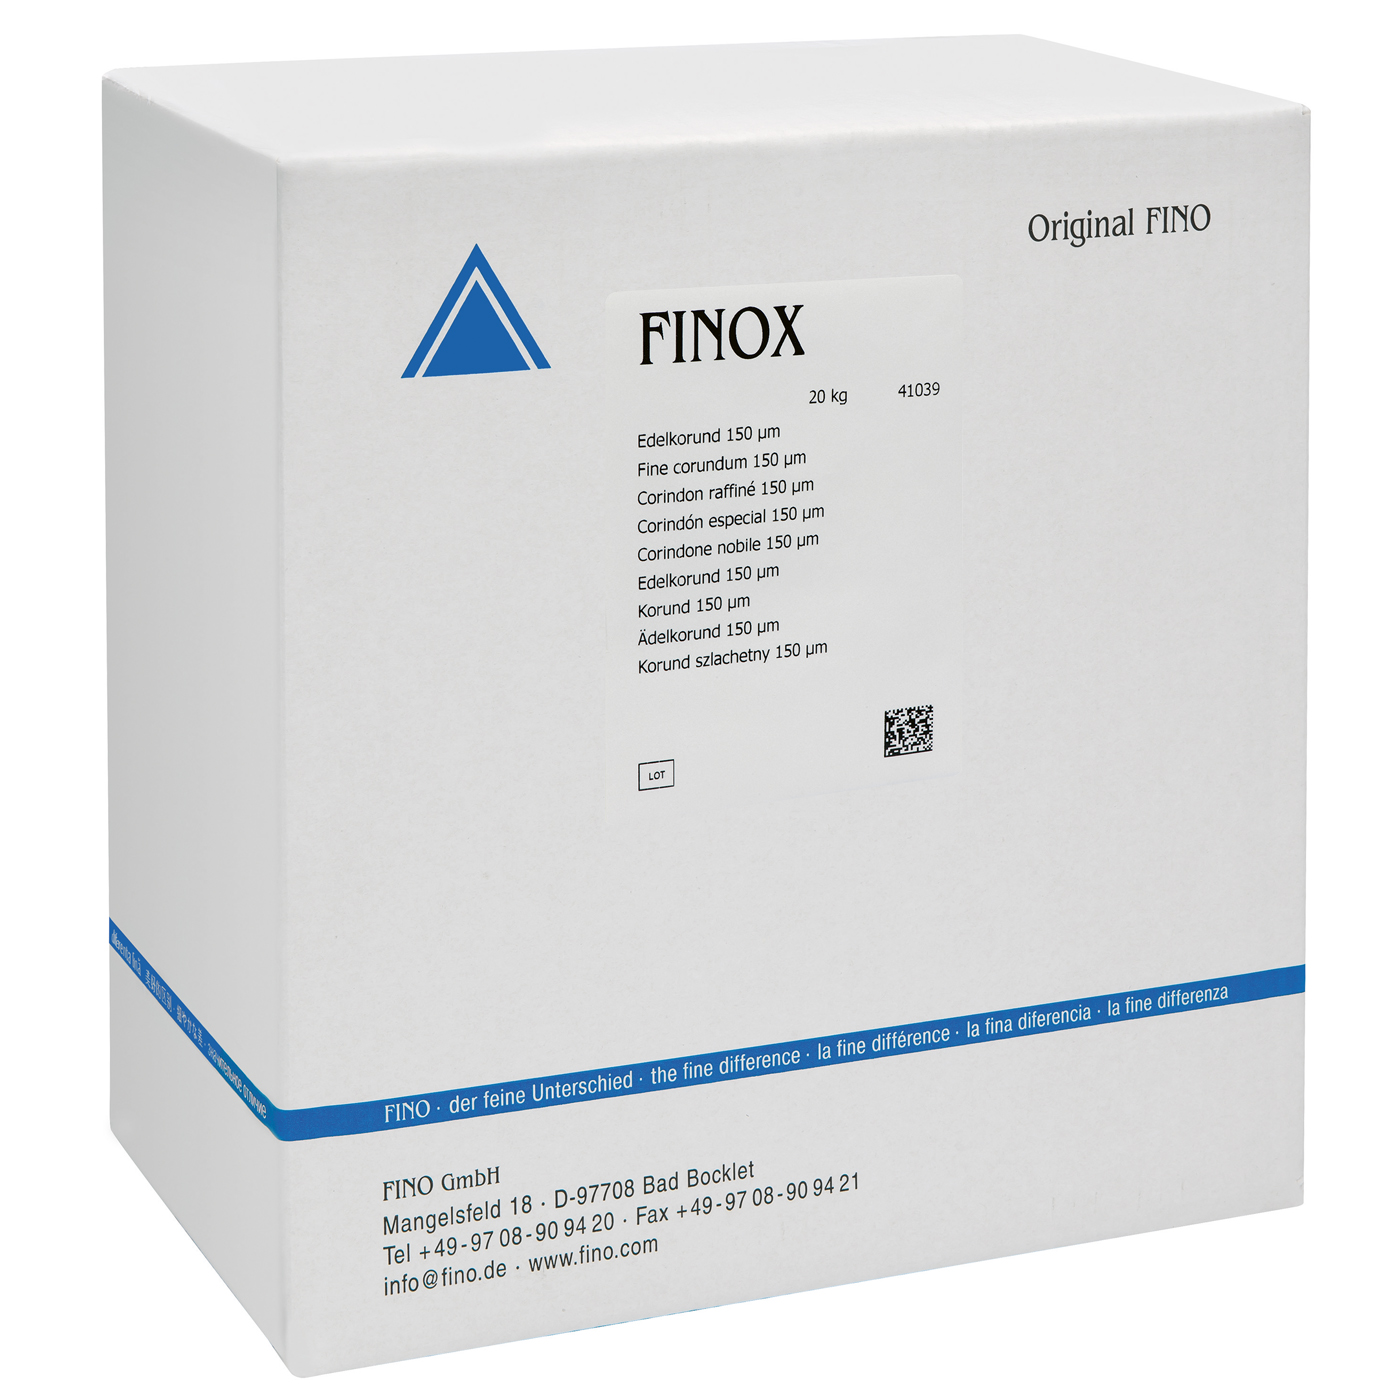 FINOX Edelkorund, 150 µm - 20 kg